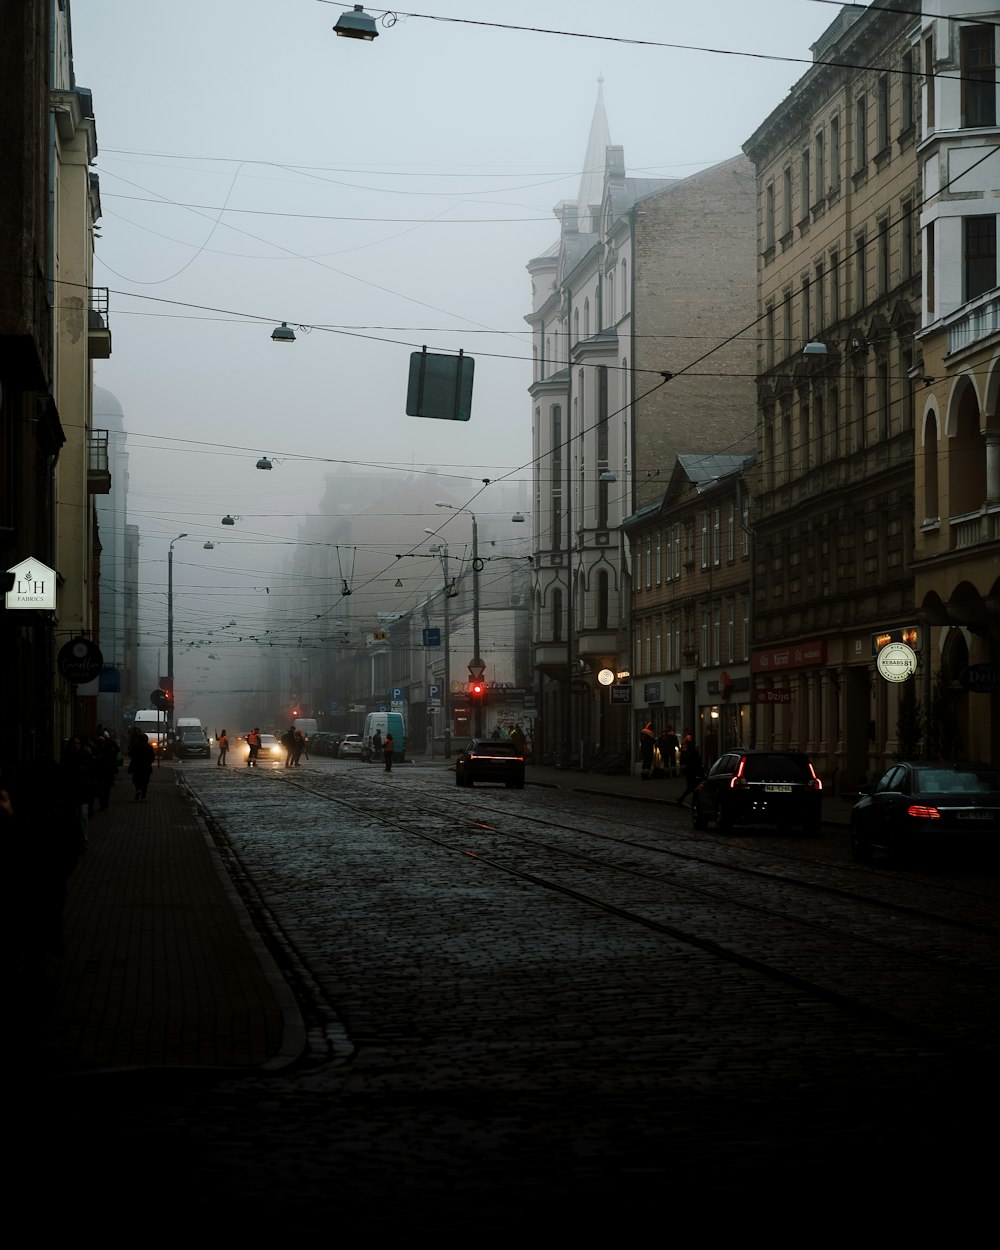 霧のかかった街の通りを車が走り抜ける